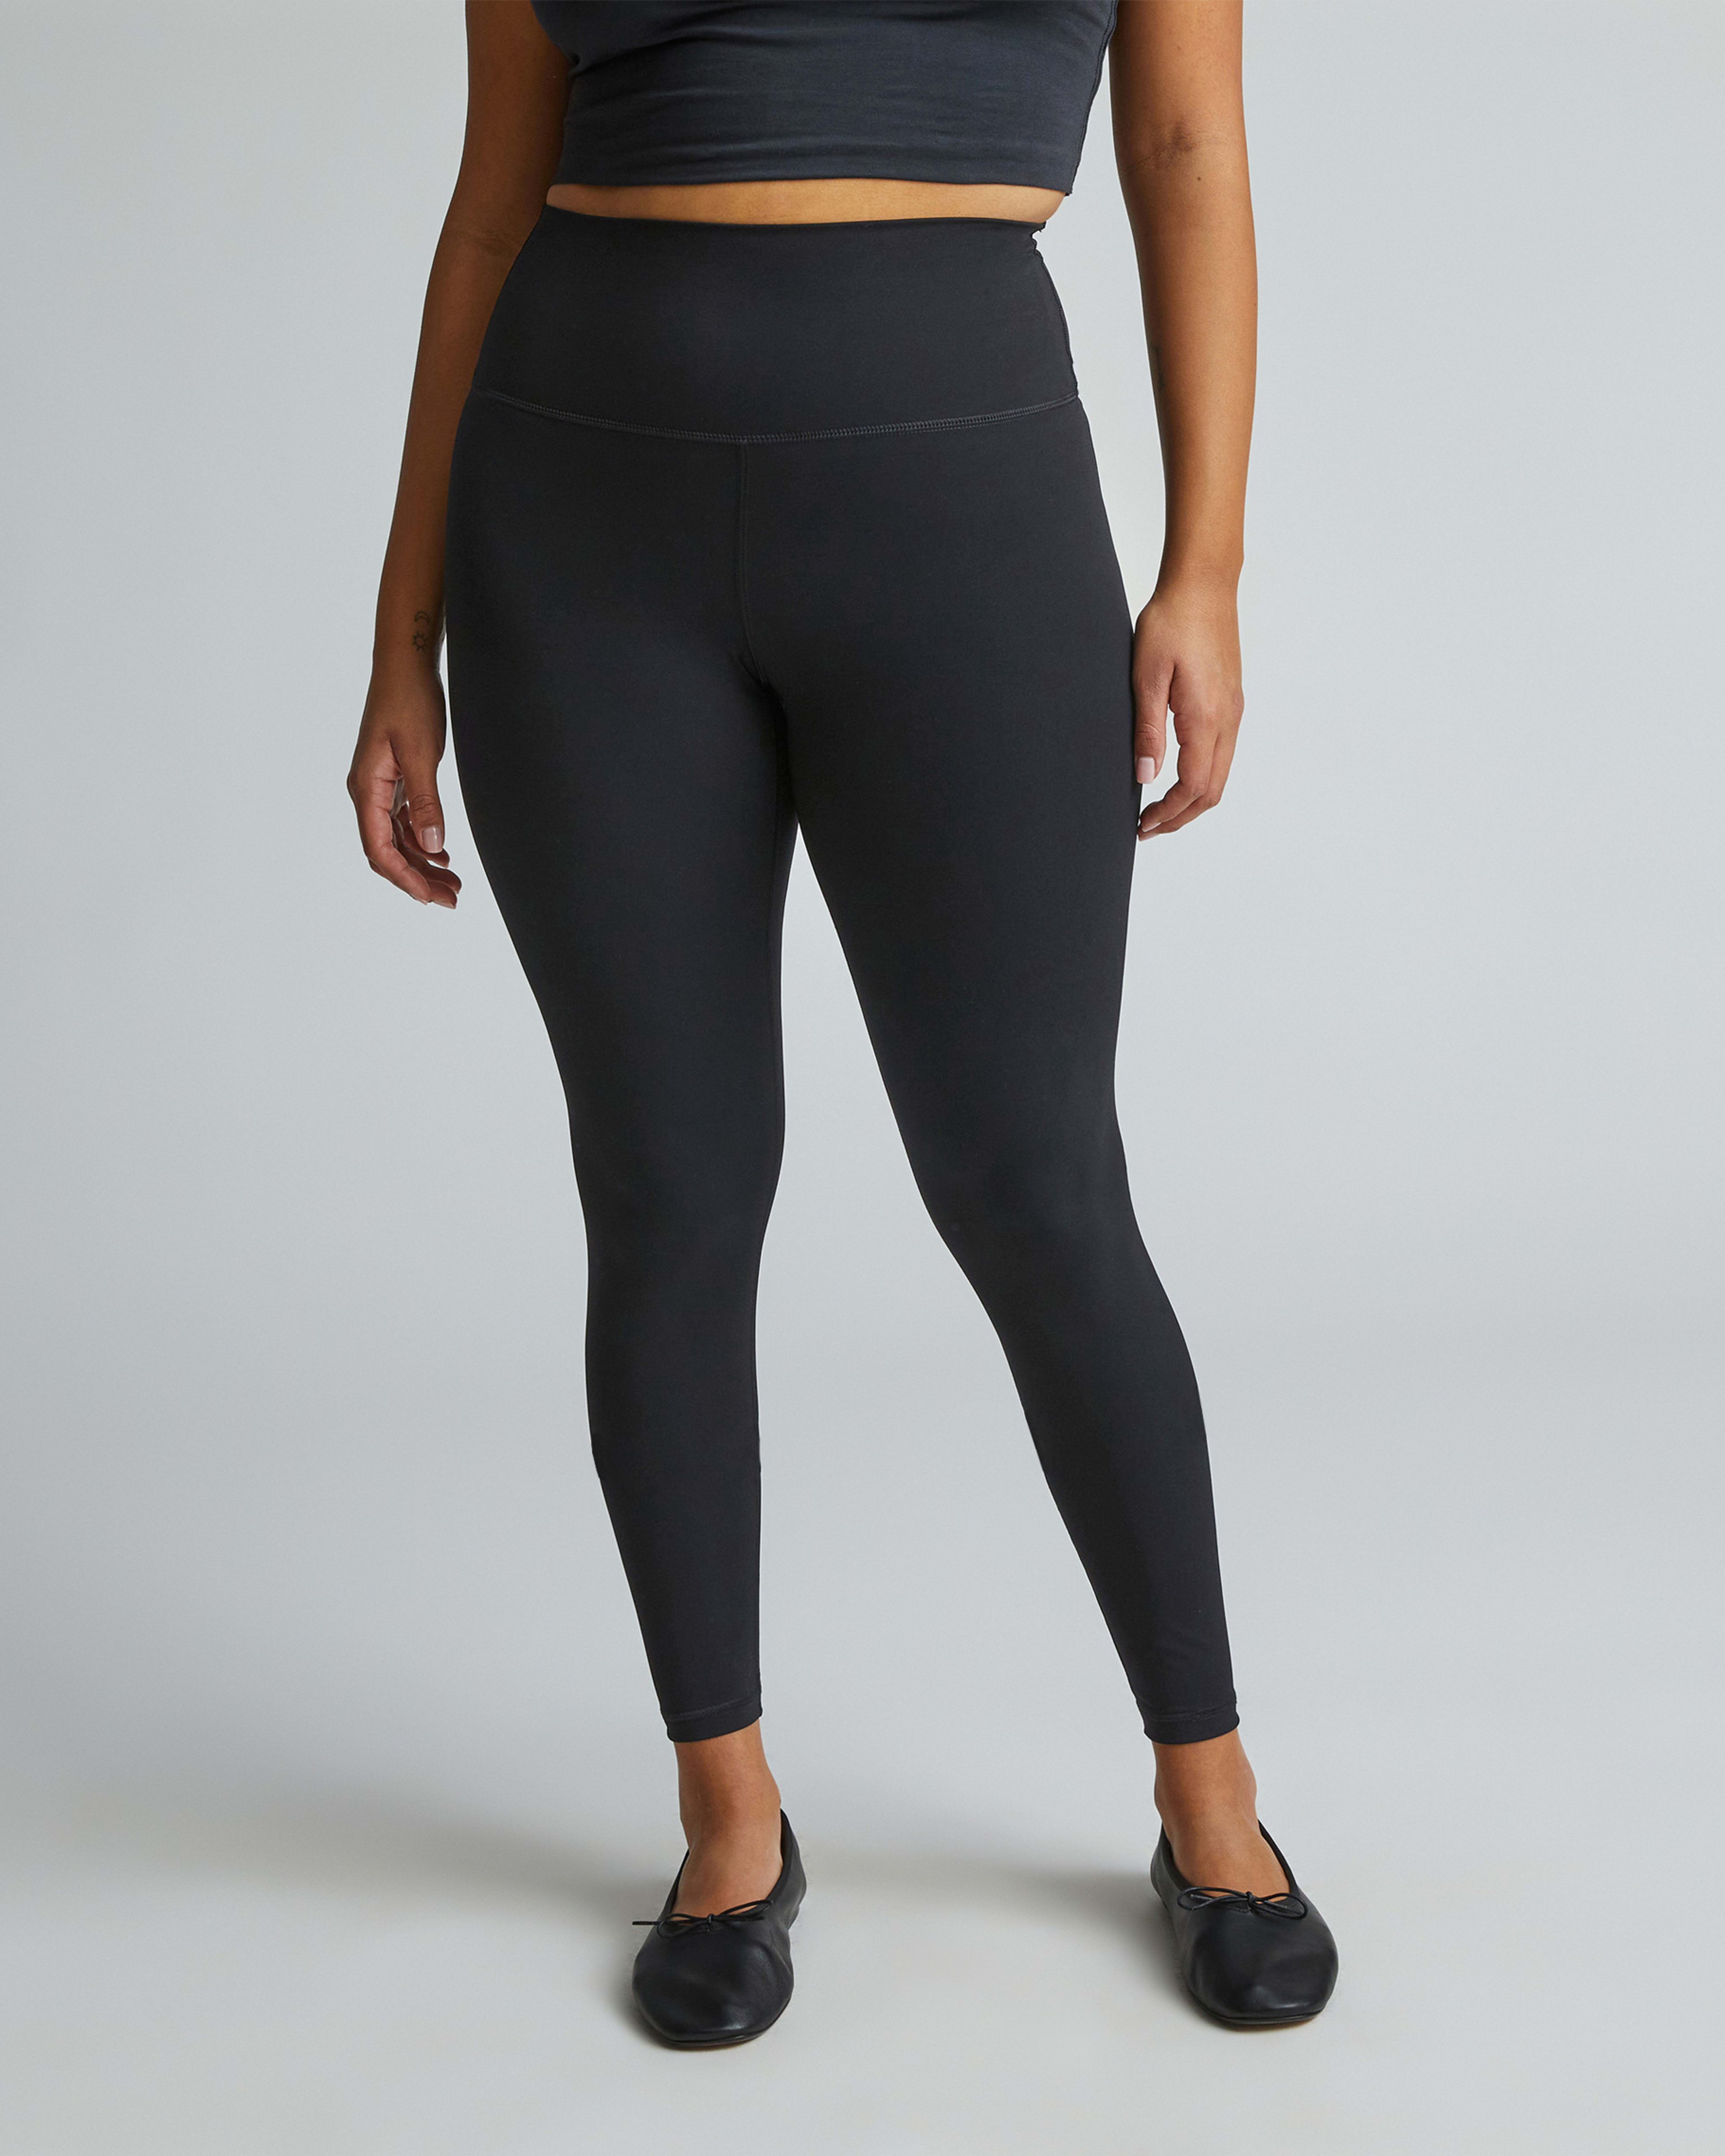 Lands' End Women's Active Crop Yoga Pants - Medium - Black